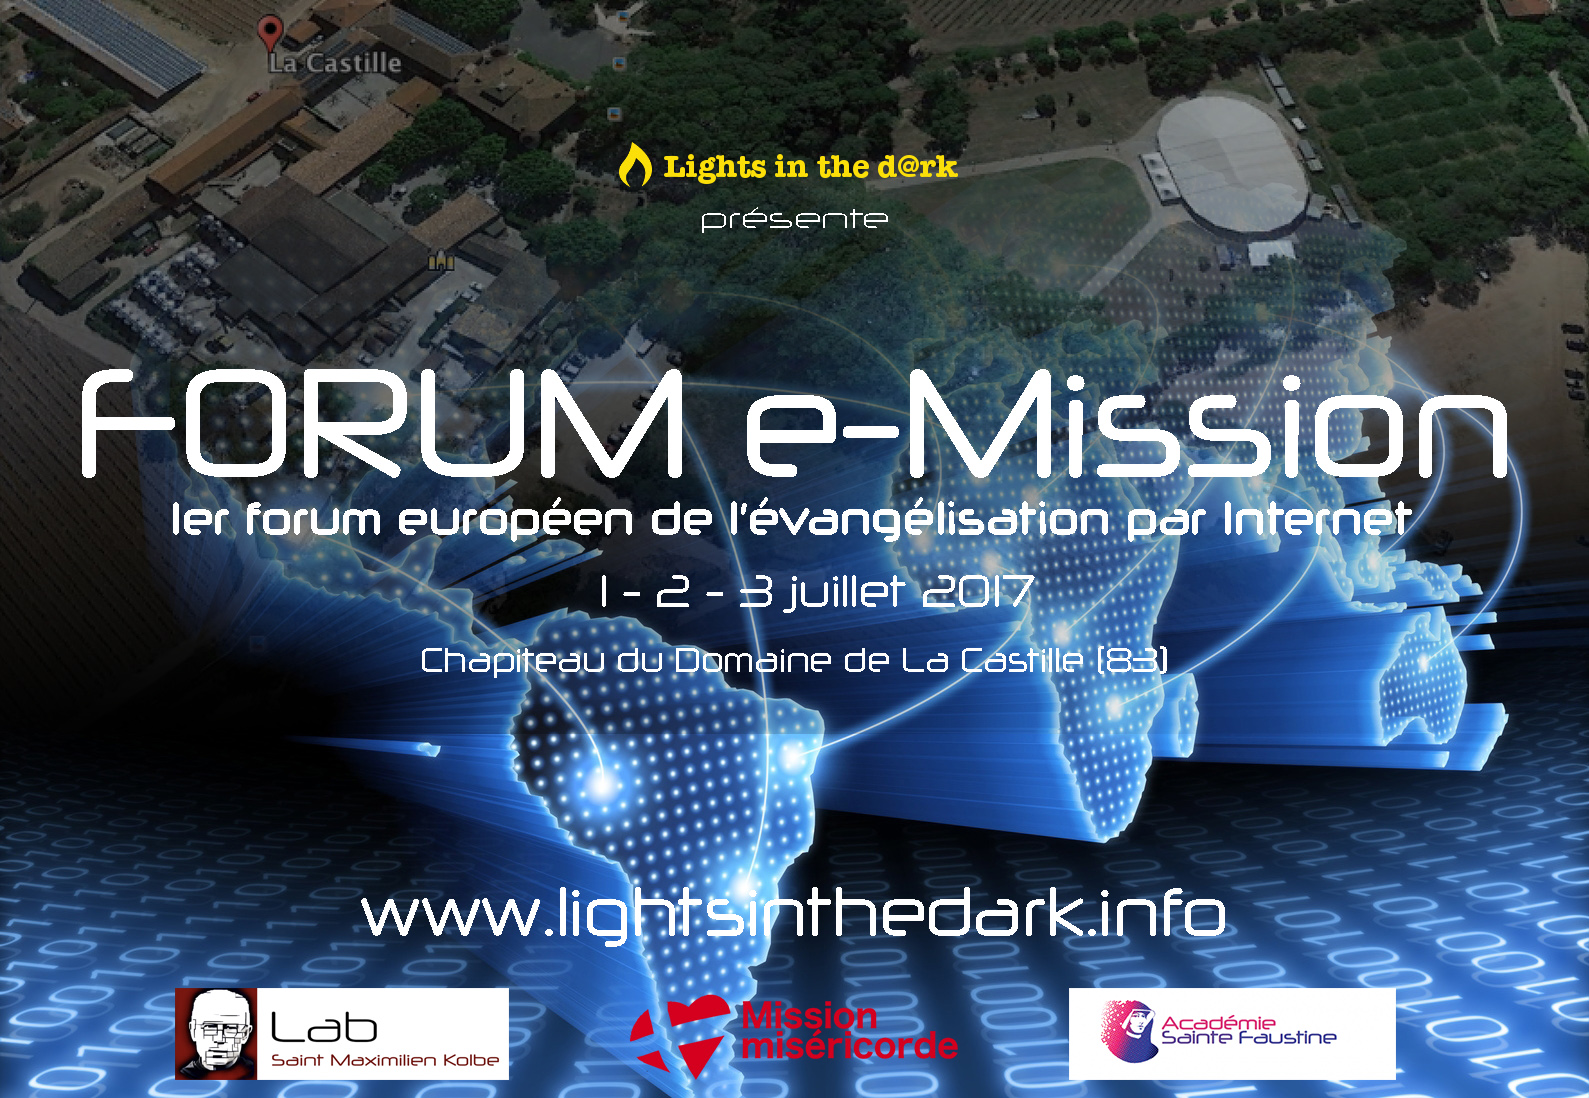 Forum e-mission : Le premier forum européen sur l’évangélisation par Internet